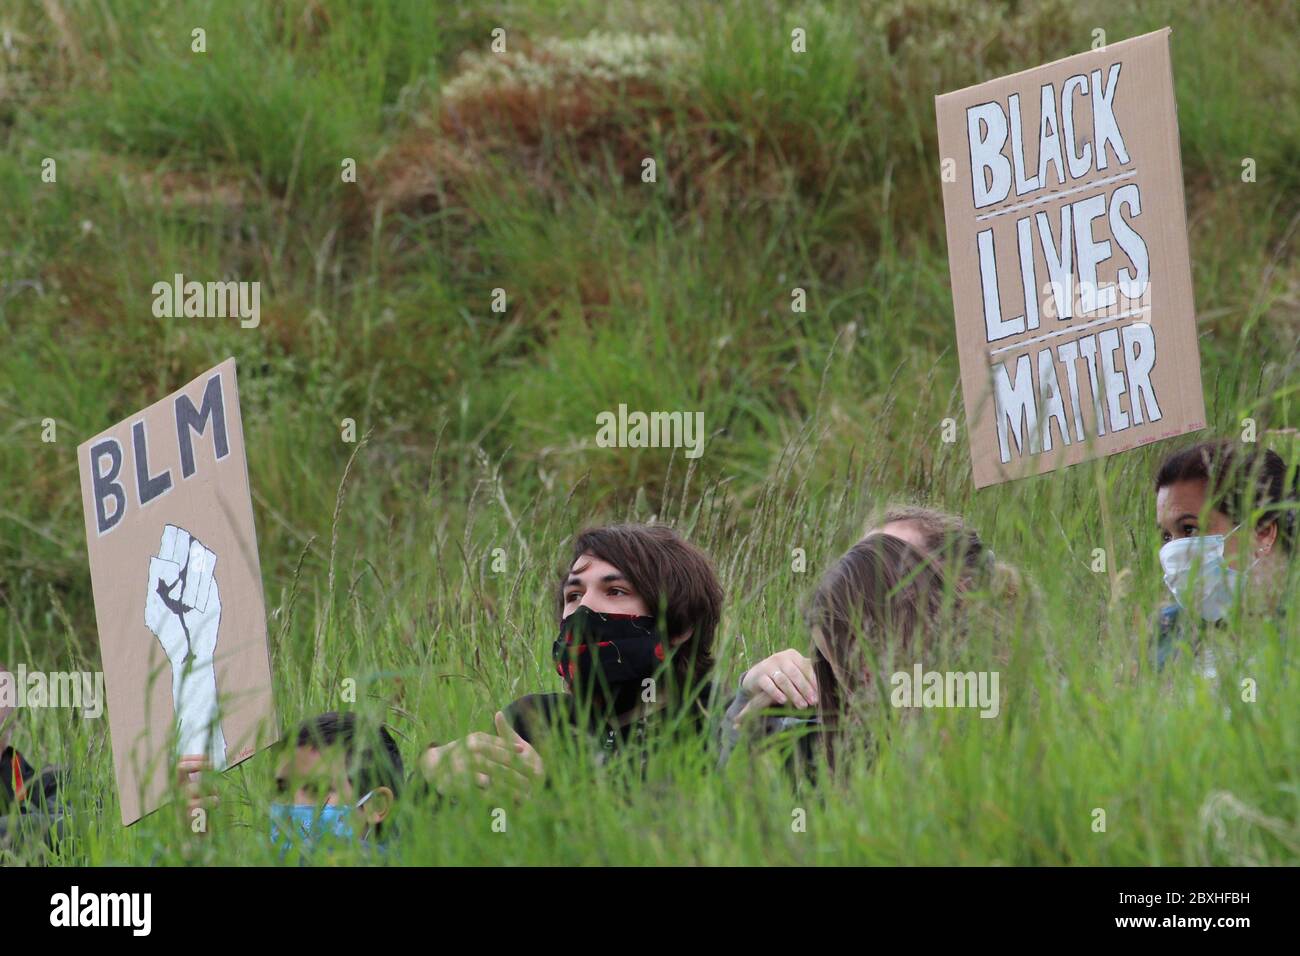 La gente que lleva una máscara sentada en hierba alta y sosteniendo los signos leyendo vidas negras importa en una demostración en Edimburgo Foto de stock